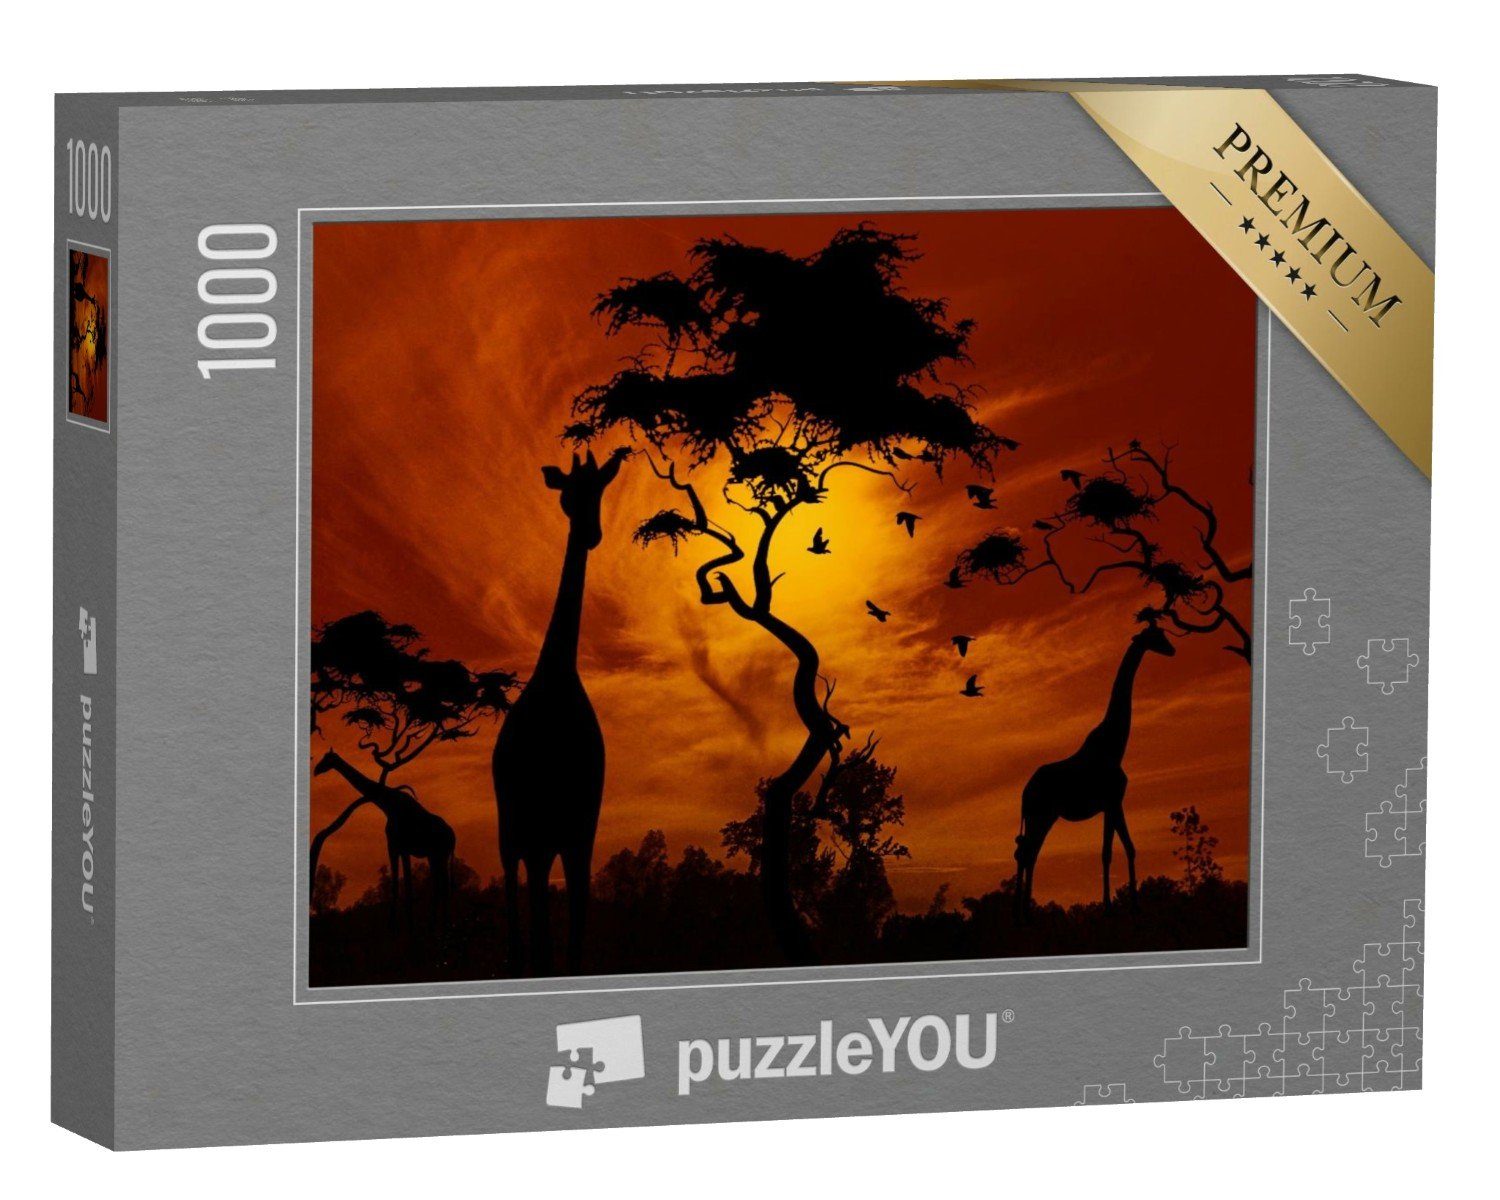 puzzleYOU Puzzle Giraffen im glühenden Sonnenuntergang, 1000 Puzzleteile, puzzleYOU-Kollektionen Safari, Savanne